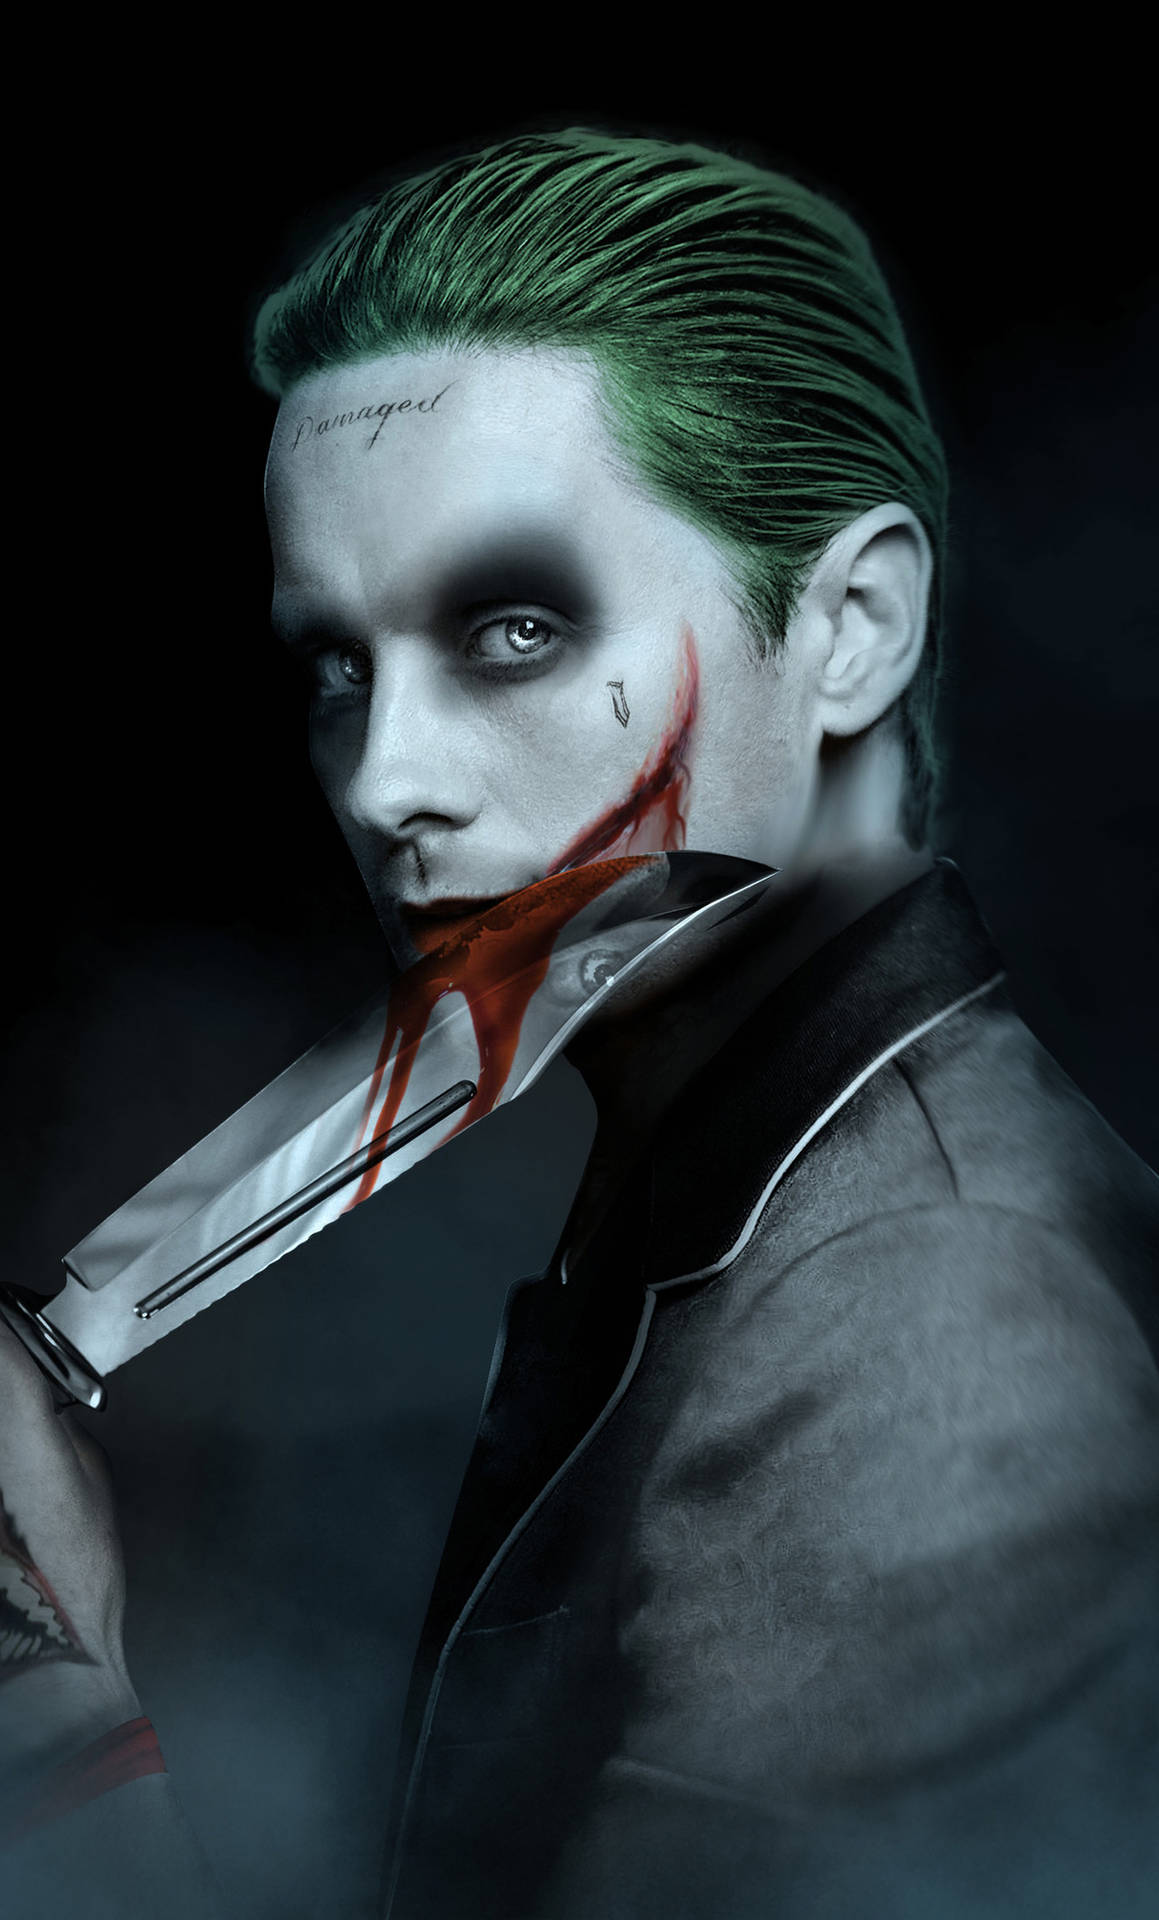 Jokertelefonbakgrund Med Jared Leto. Wallpaper